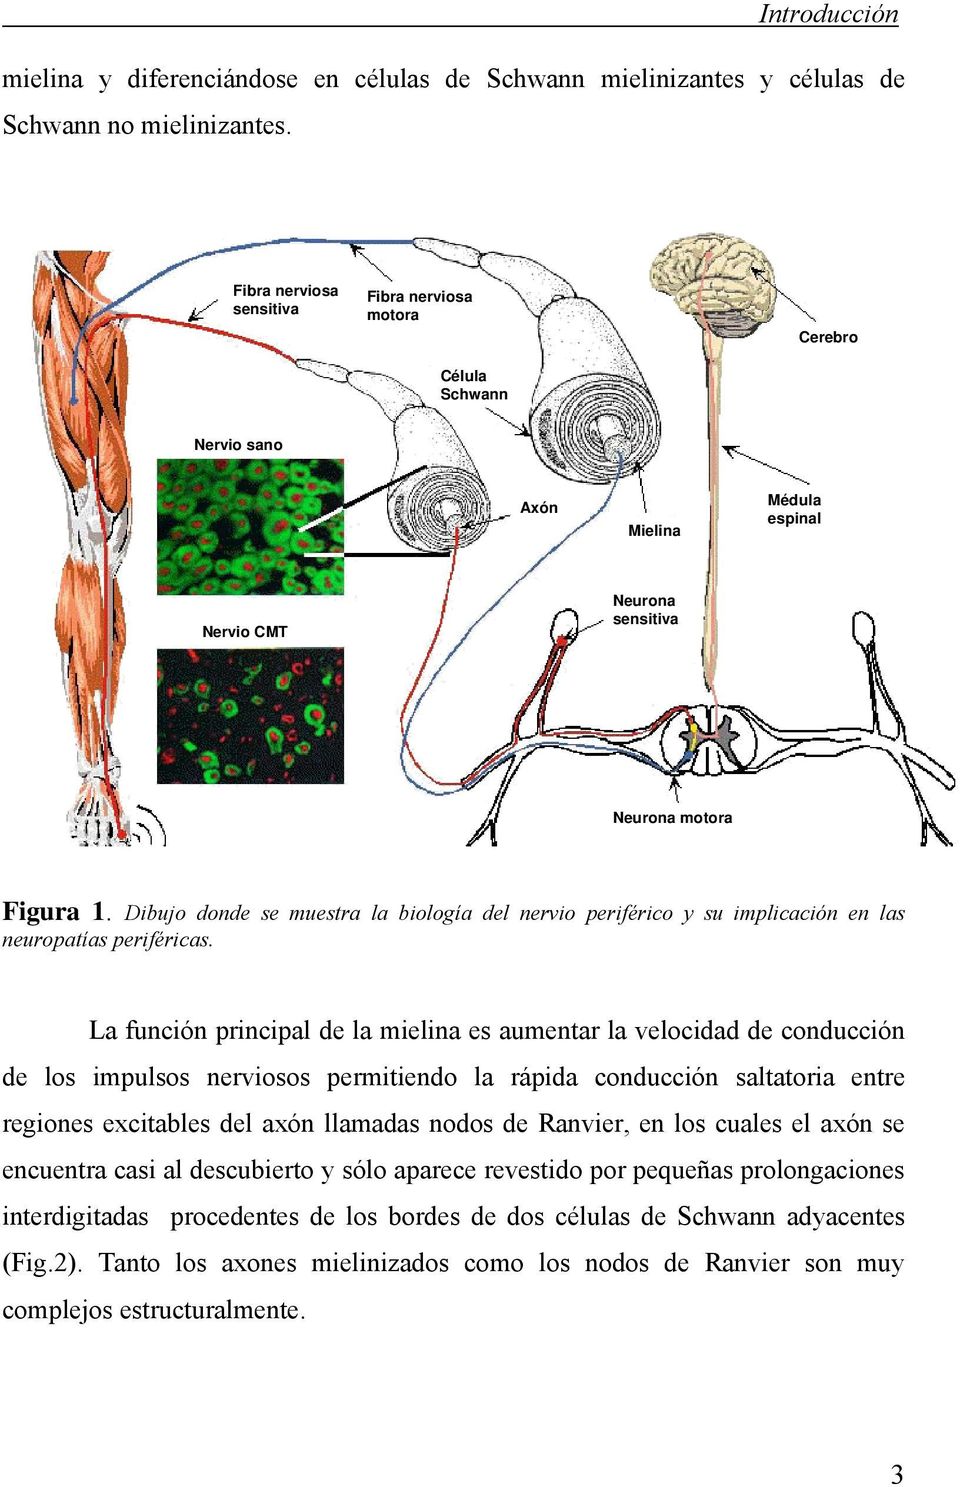 Dibujo donde se muestra la biología del nervio periférico y su implicación en las neuropatías periféricas.